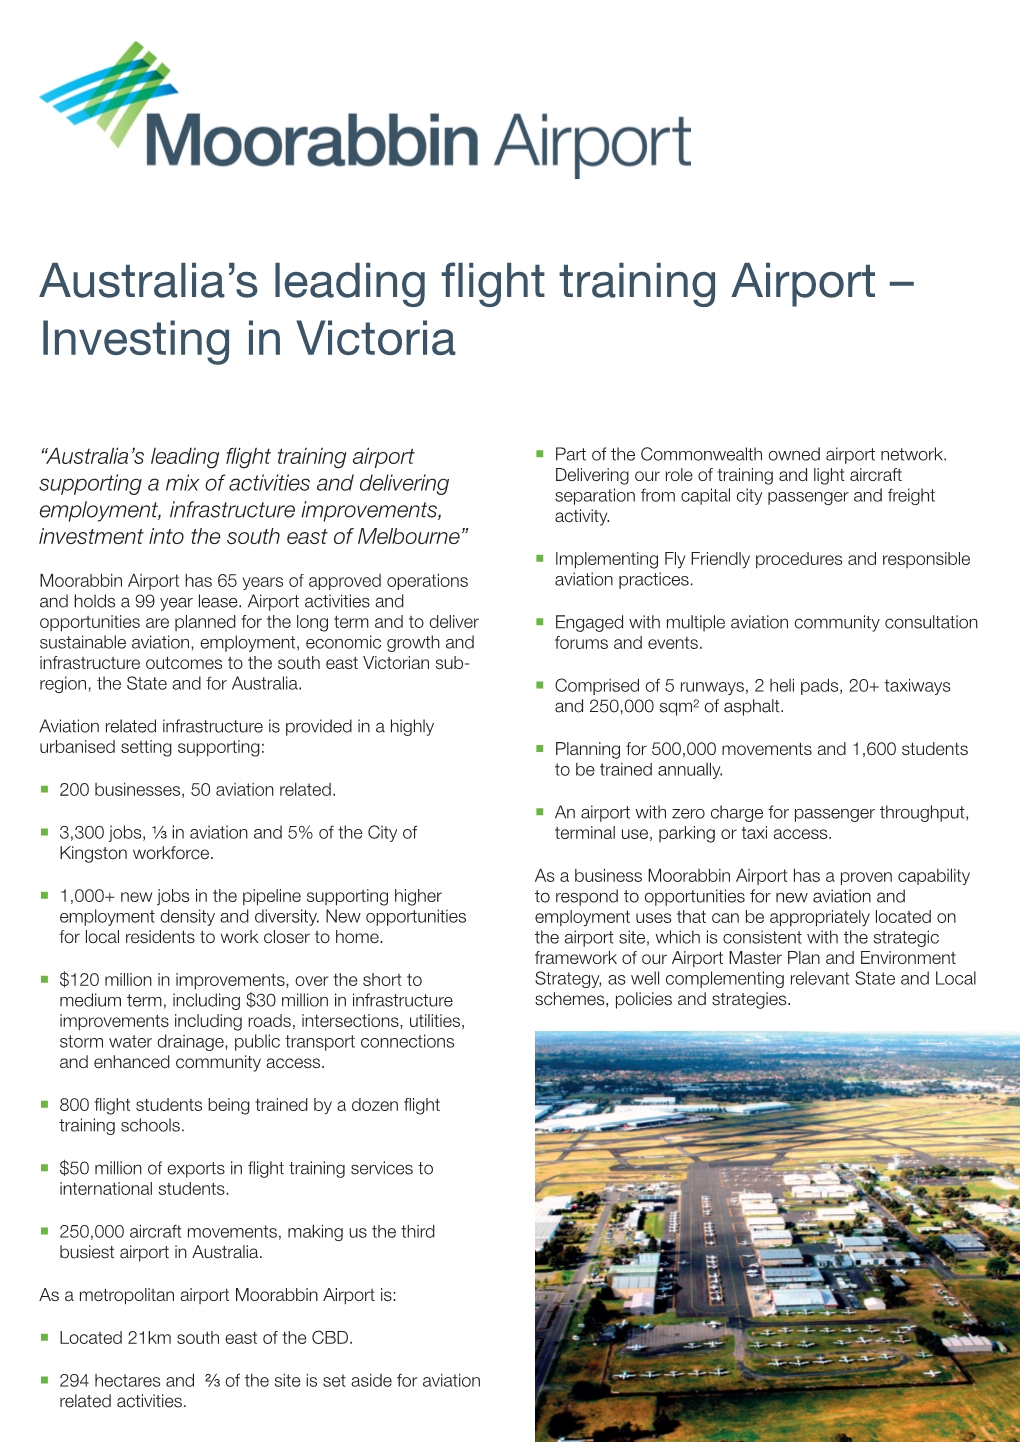 Australia's Leading Flight Training Airport – Investing in Victoria